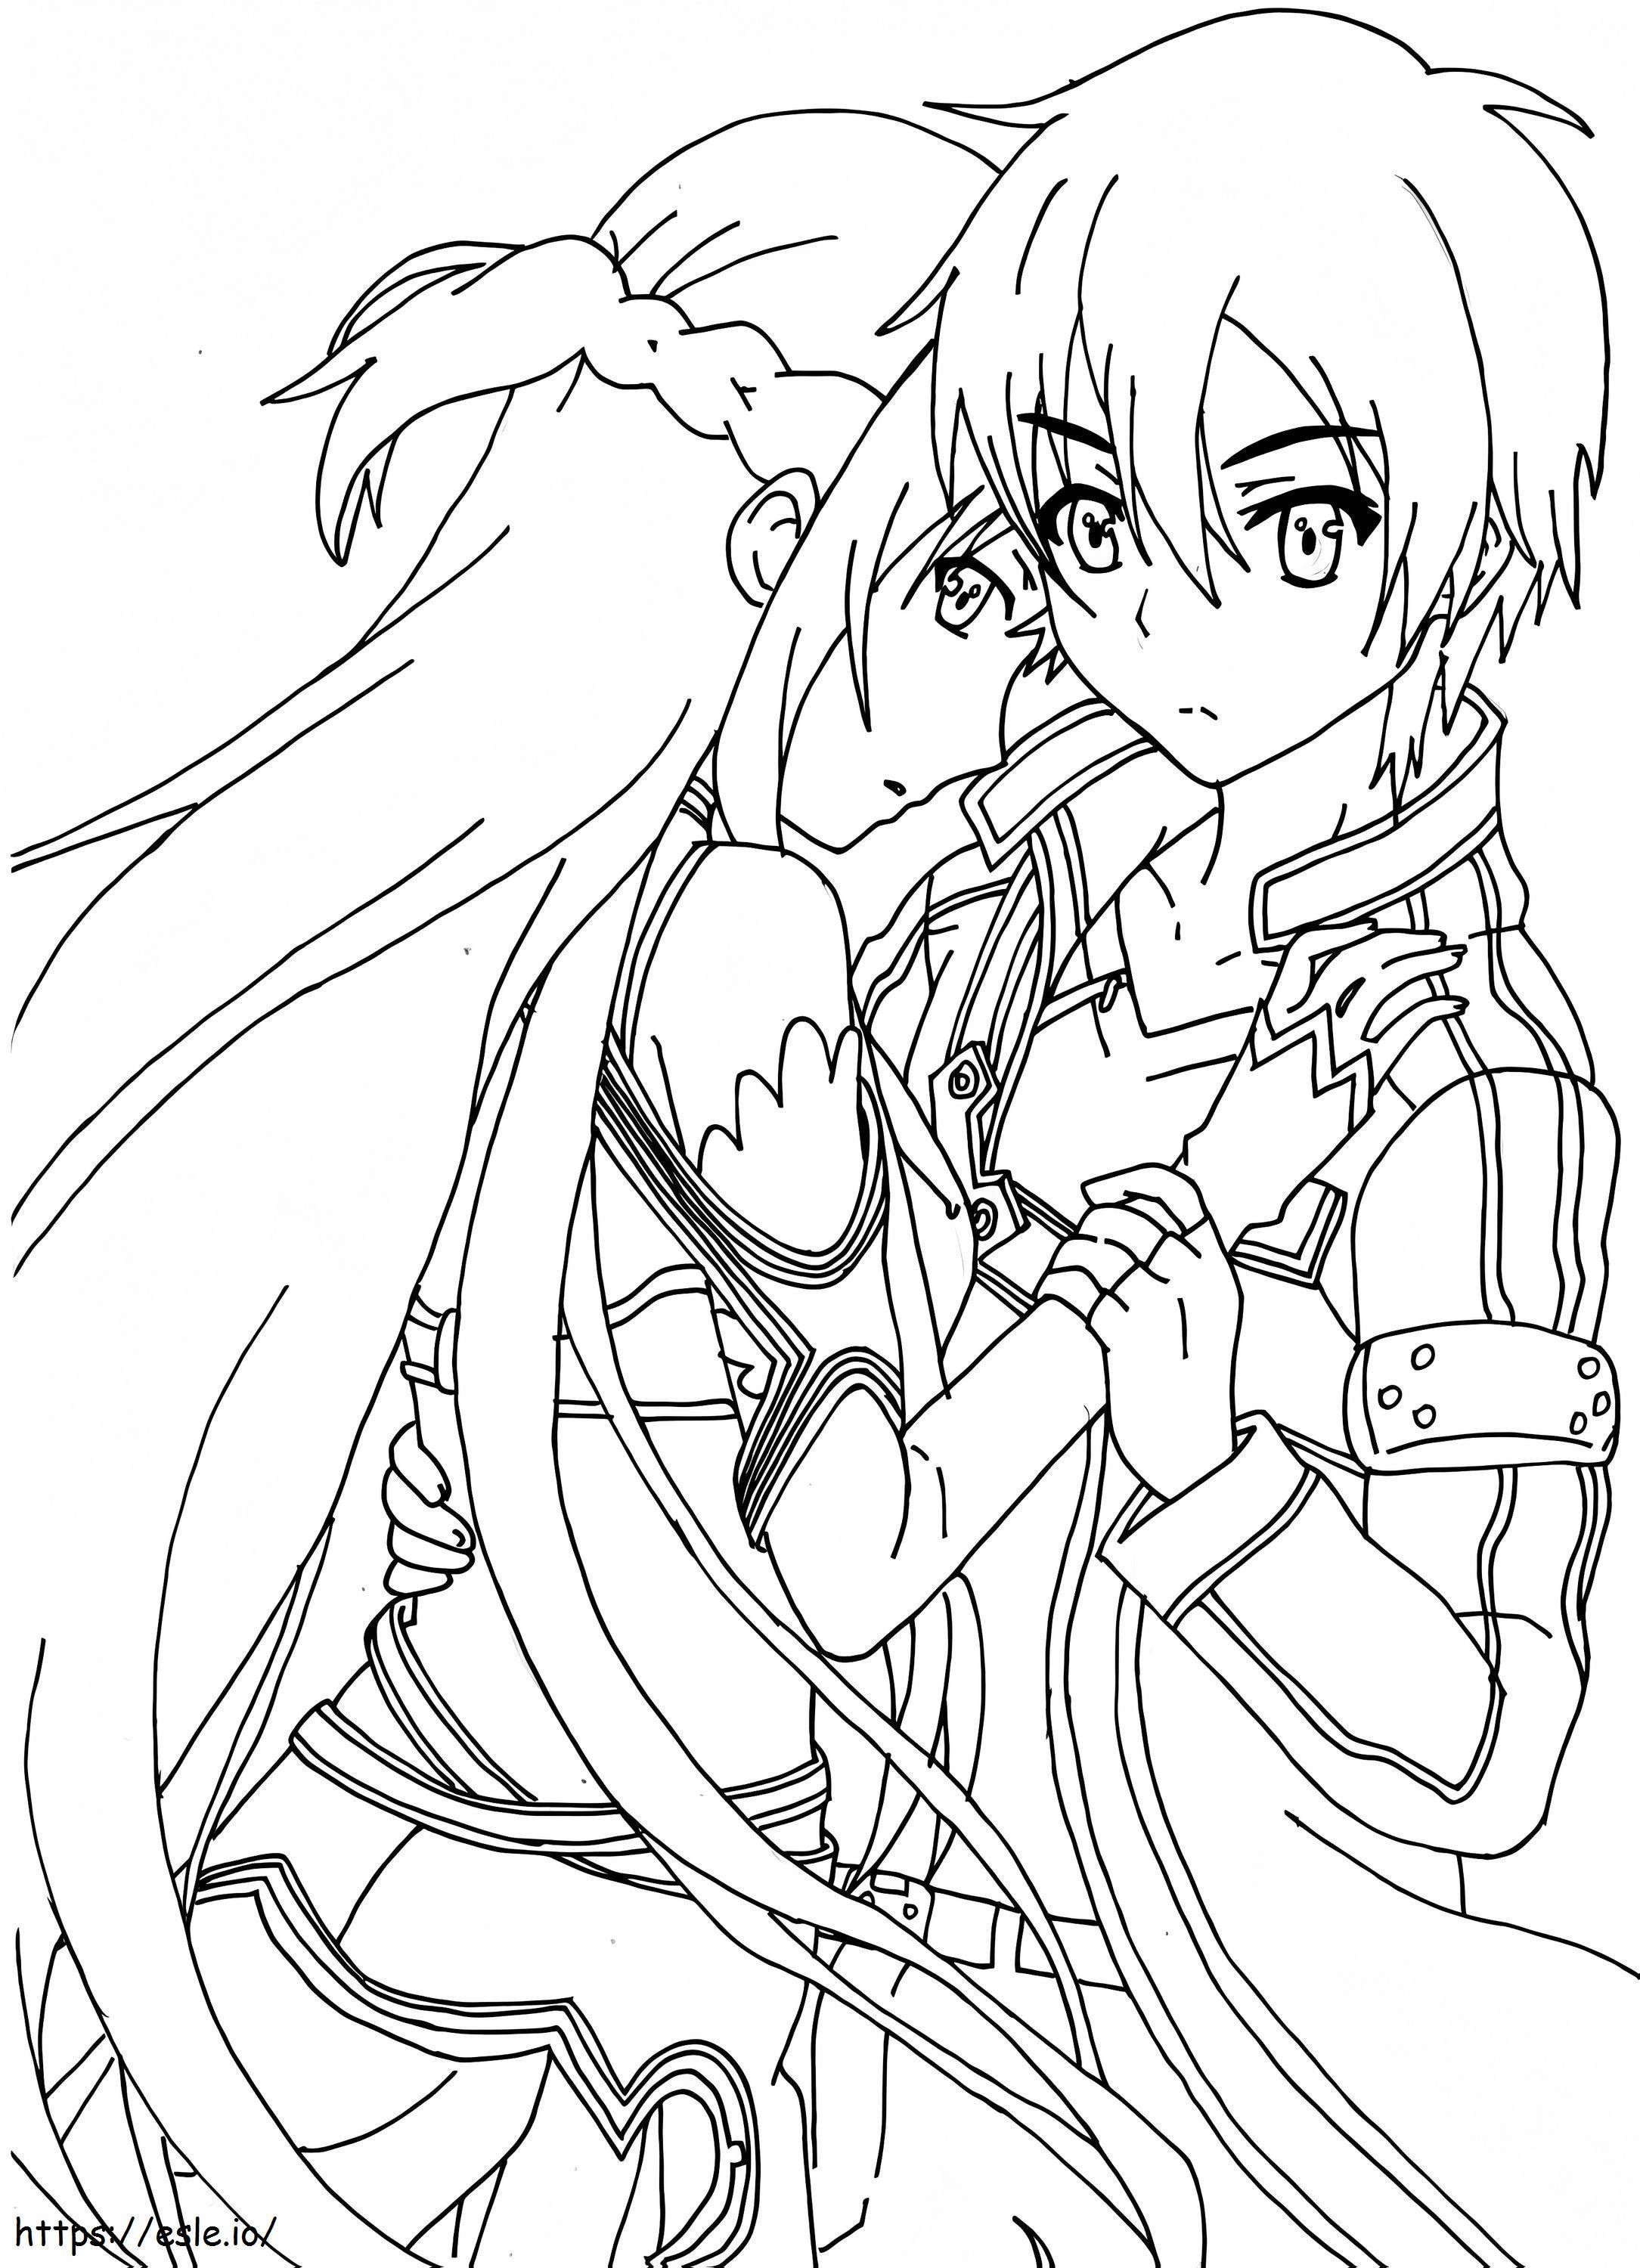 Kirito ve Asuna'yı seviyorum boyama